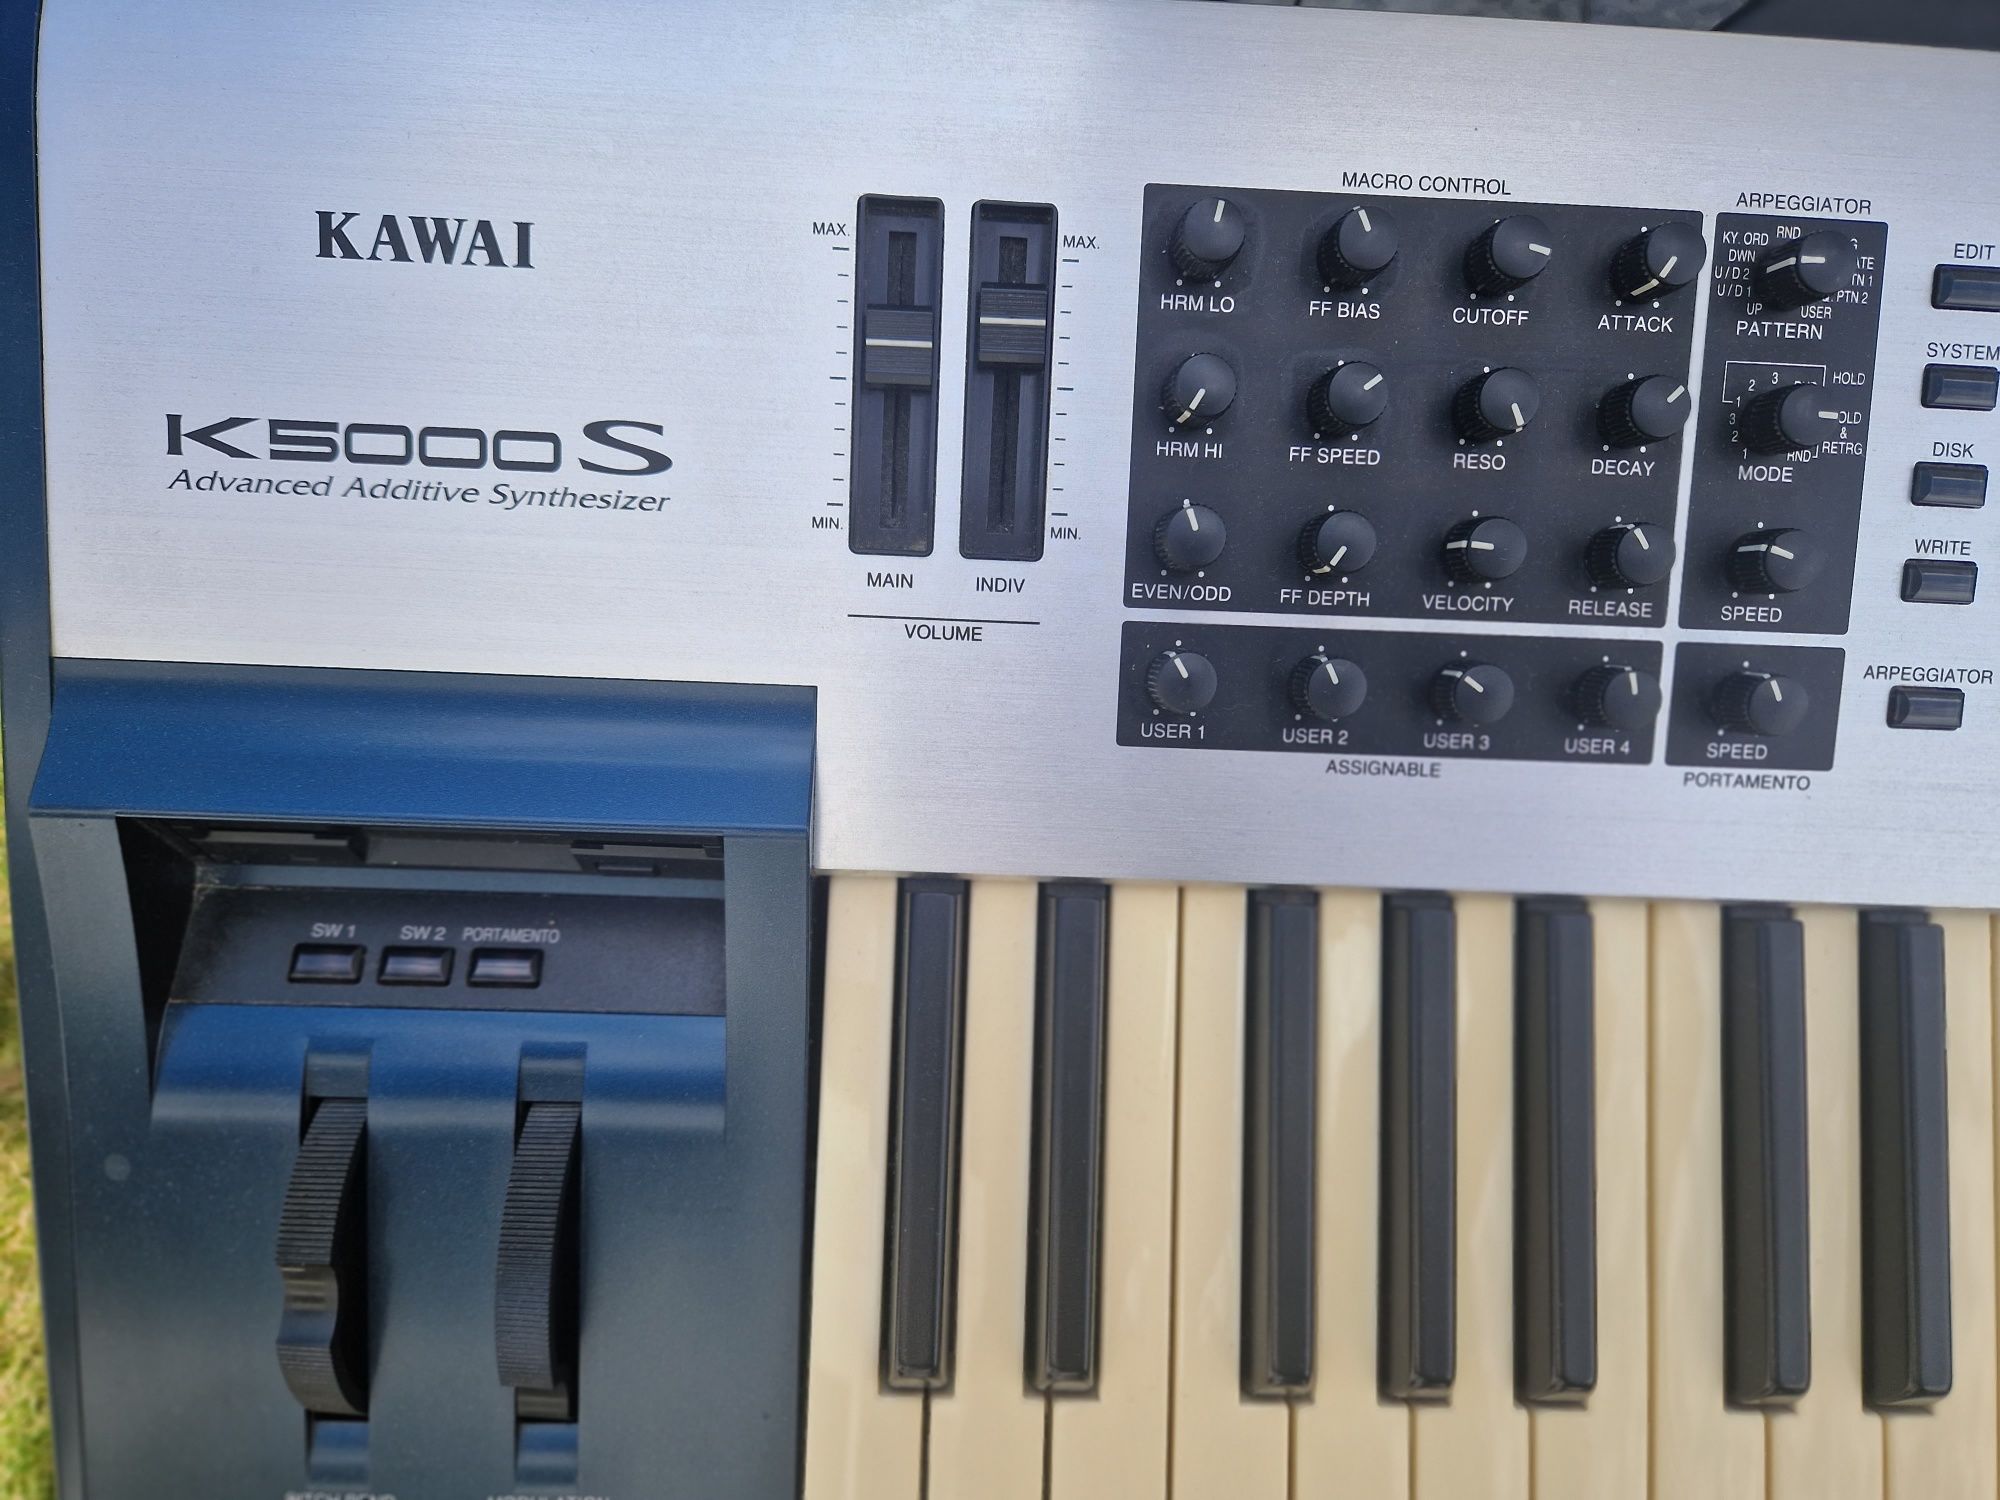 Kawai K5000S syntezator. Synth.